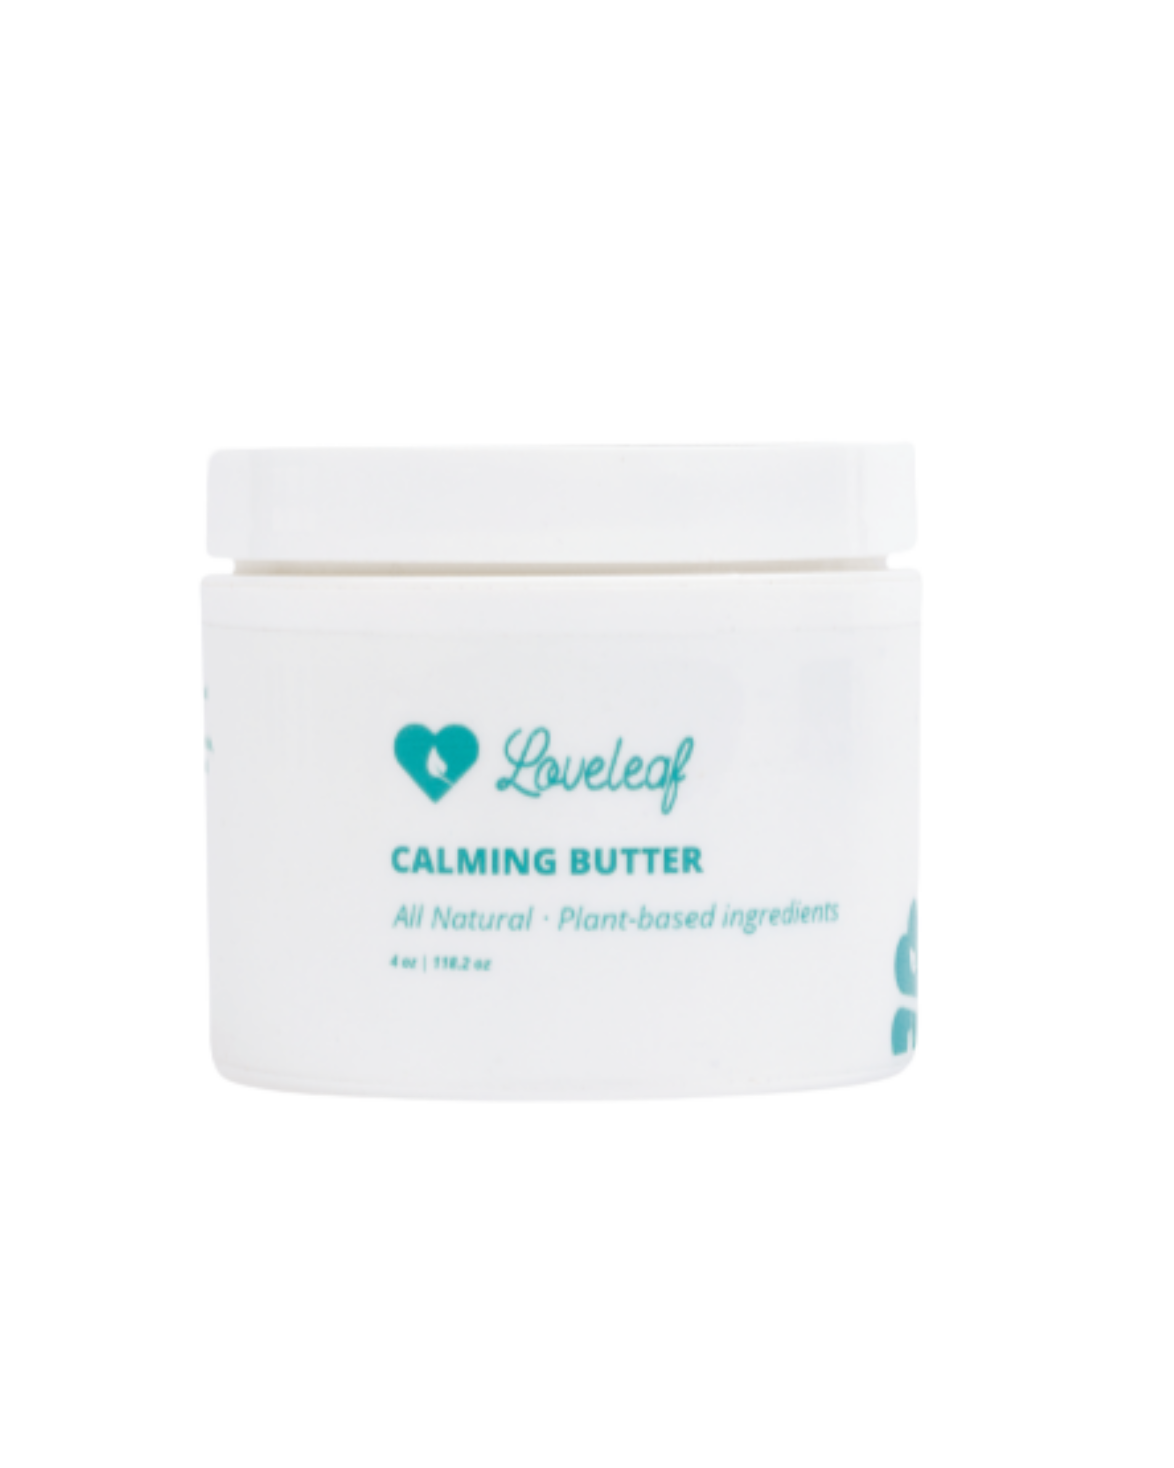 Calming Body Butter